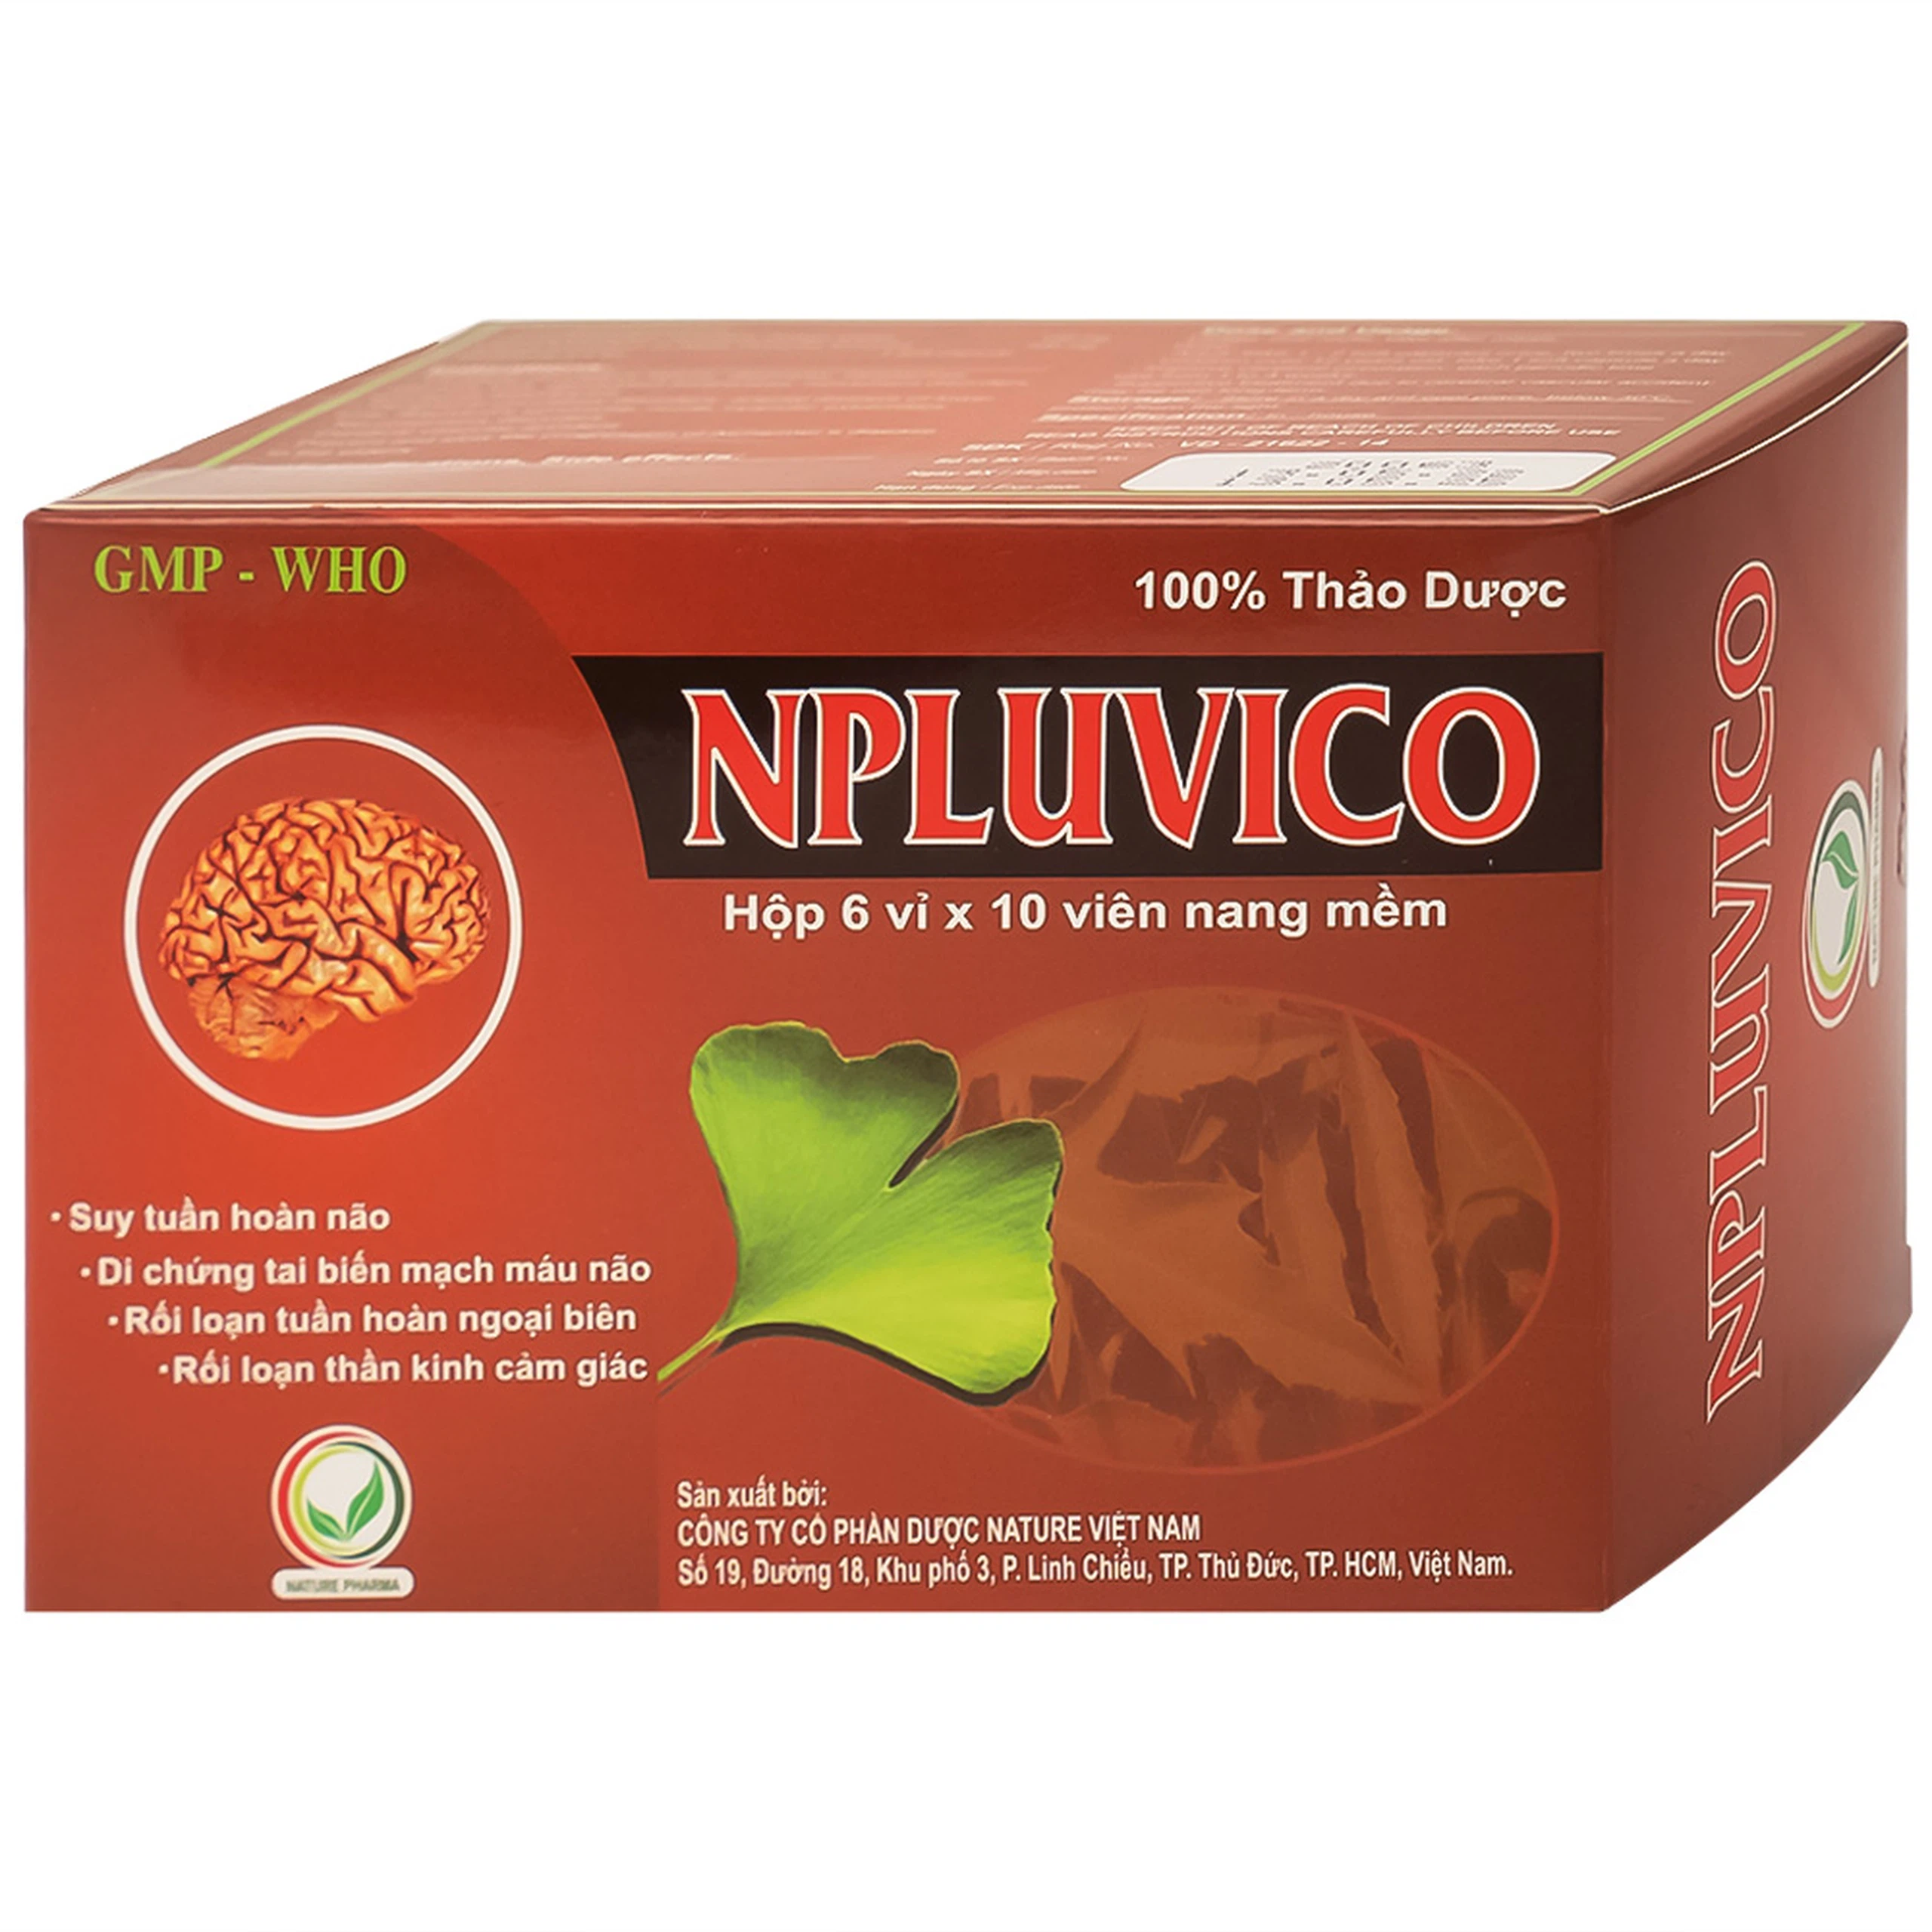 Thuốc Npluvico Nature điều trị suy tuần hoàn não (6 vỉ x 10 viên)